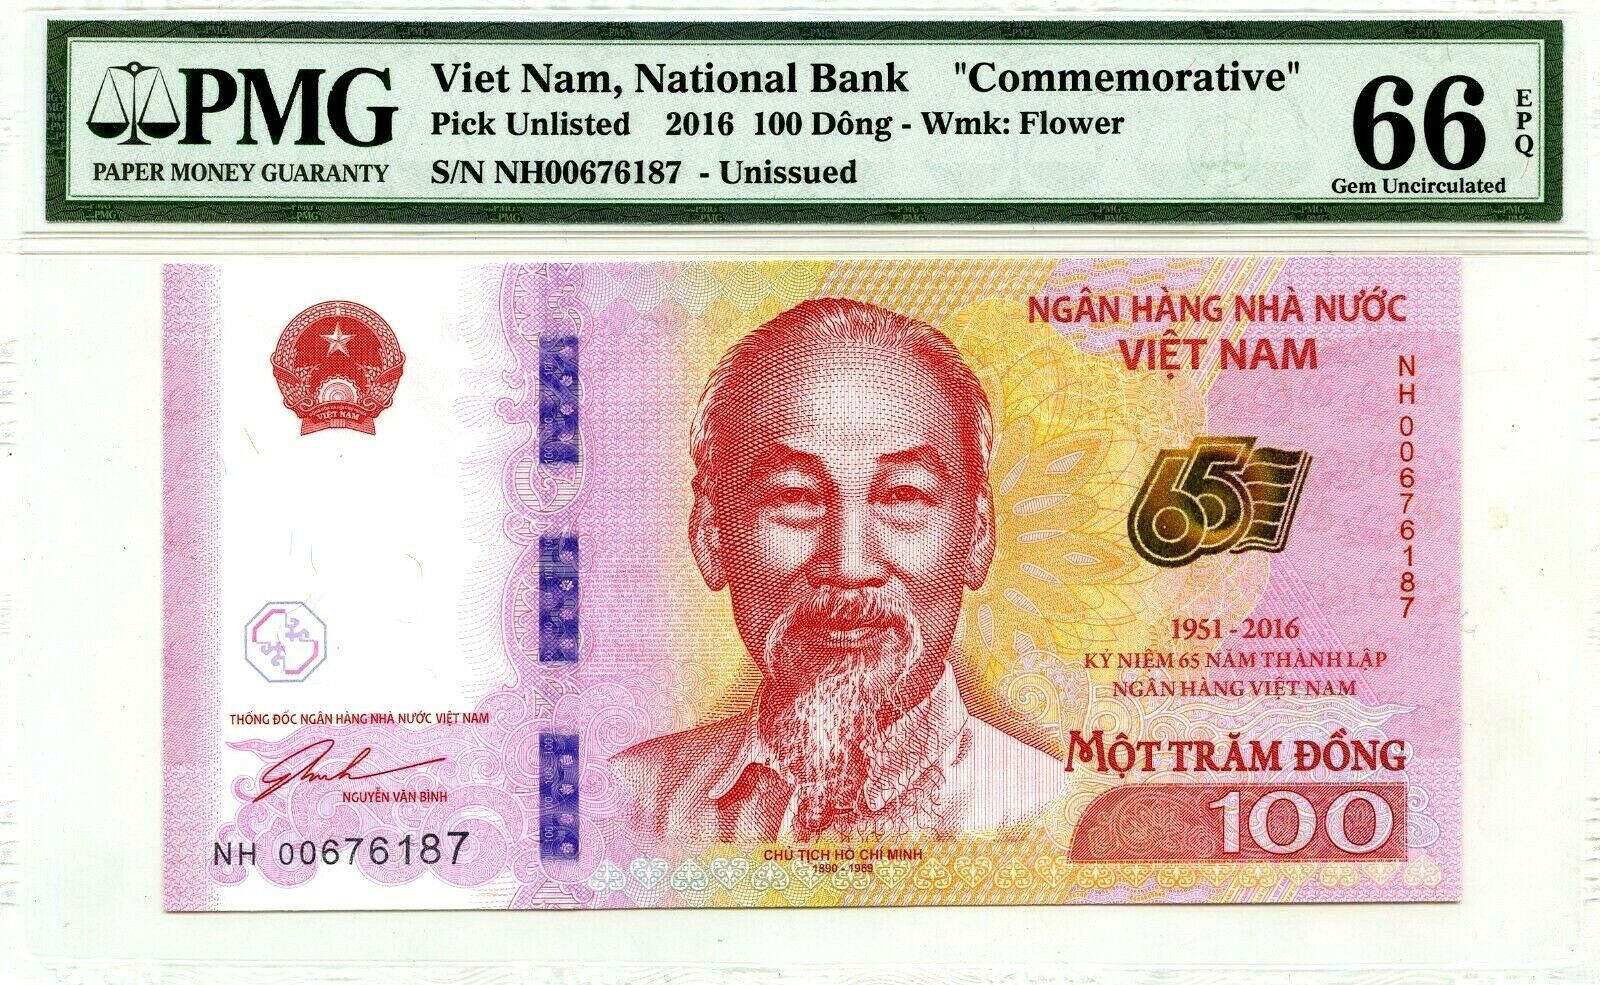 Vietnam Viet Nam 100 Dong p-125 2016 Commemorative UNC Banknote